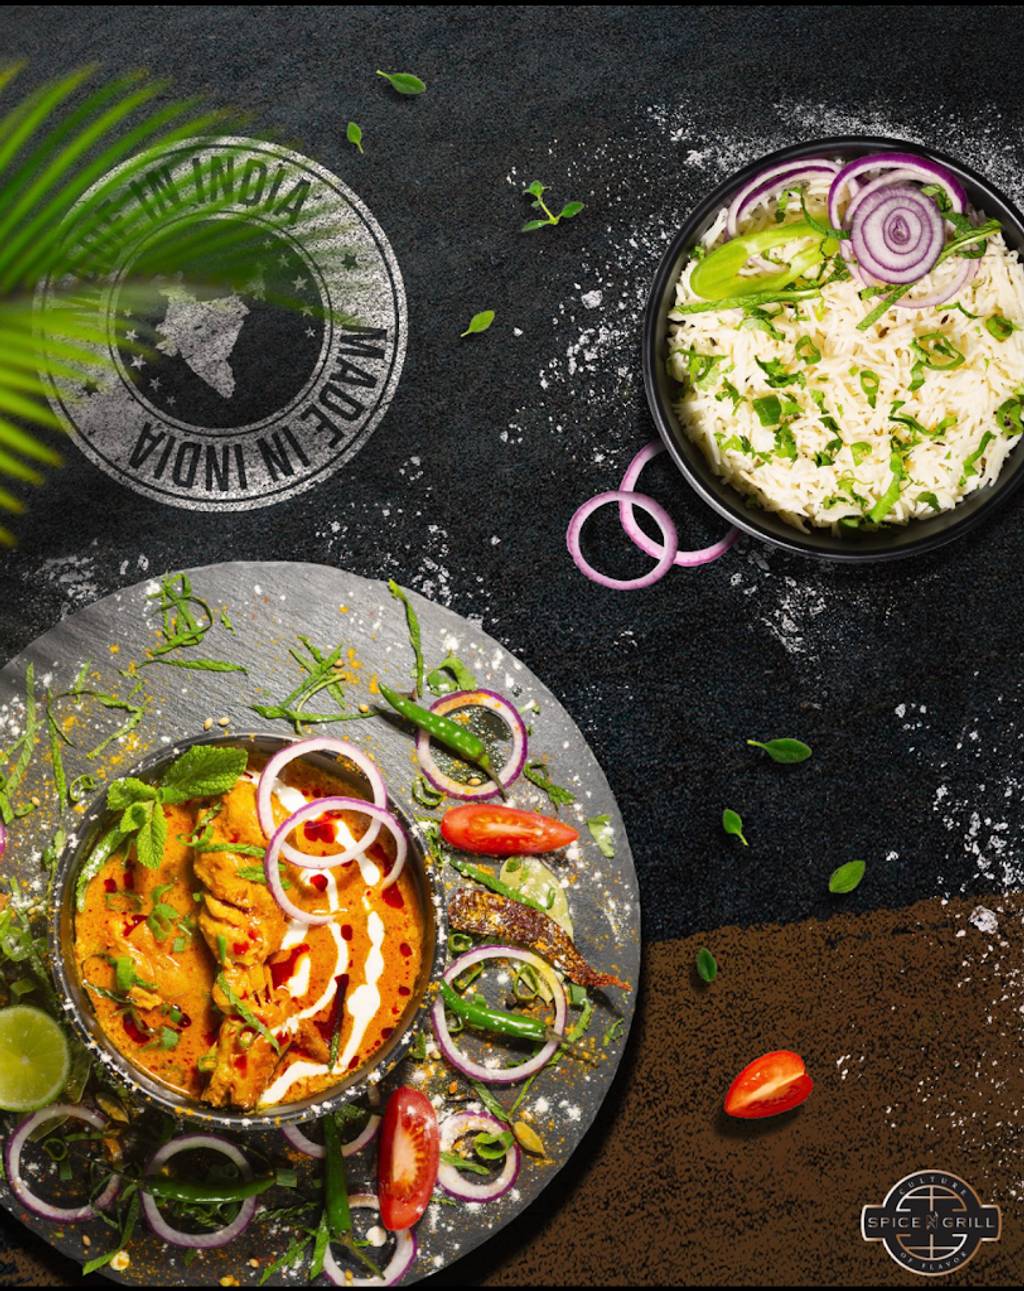 SPICE'N'GRILL Restaurant Indien Moderne Herblay-sur-Seine - Food Ingredient Recipe Cuisine Dish